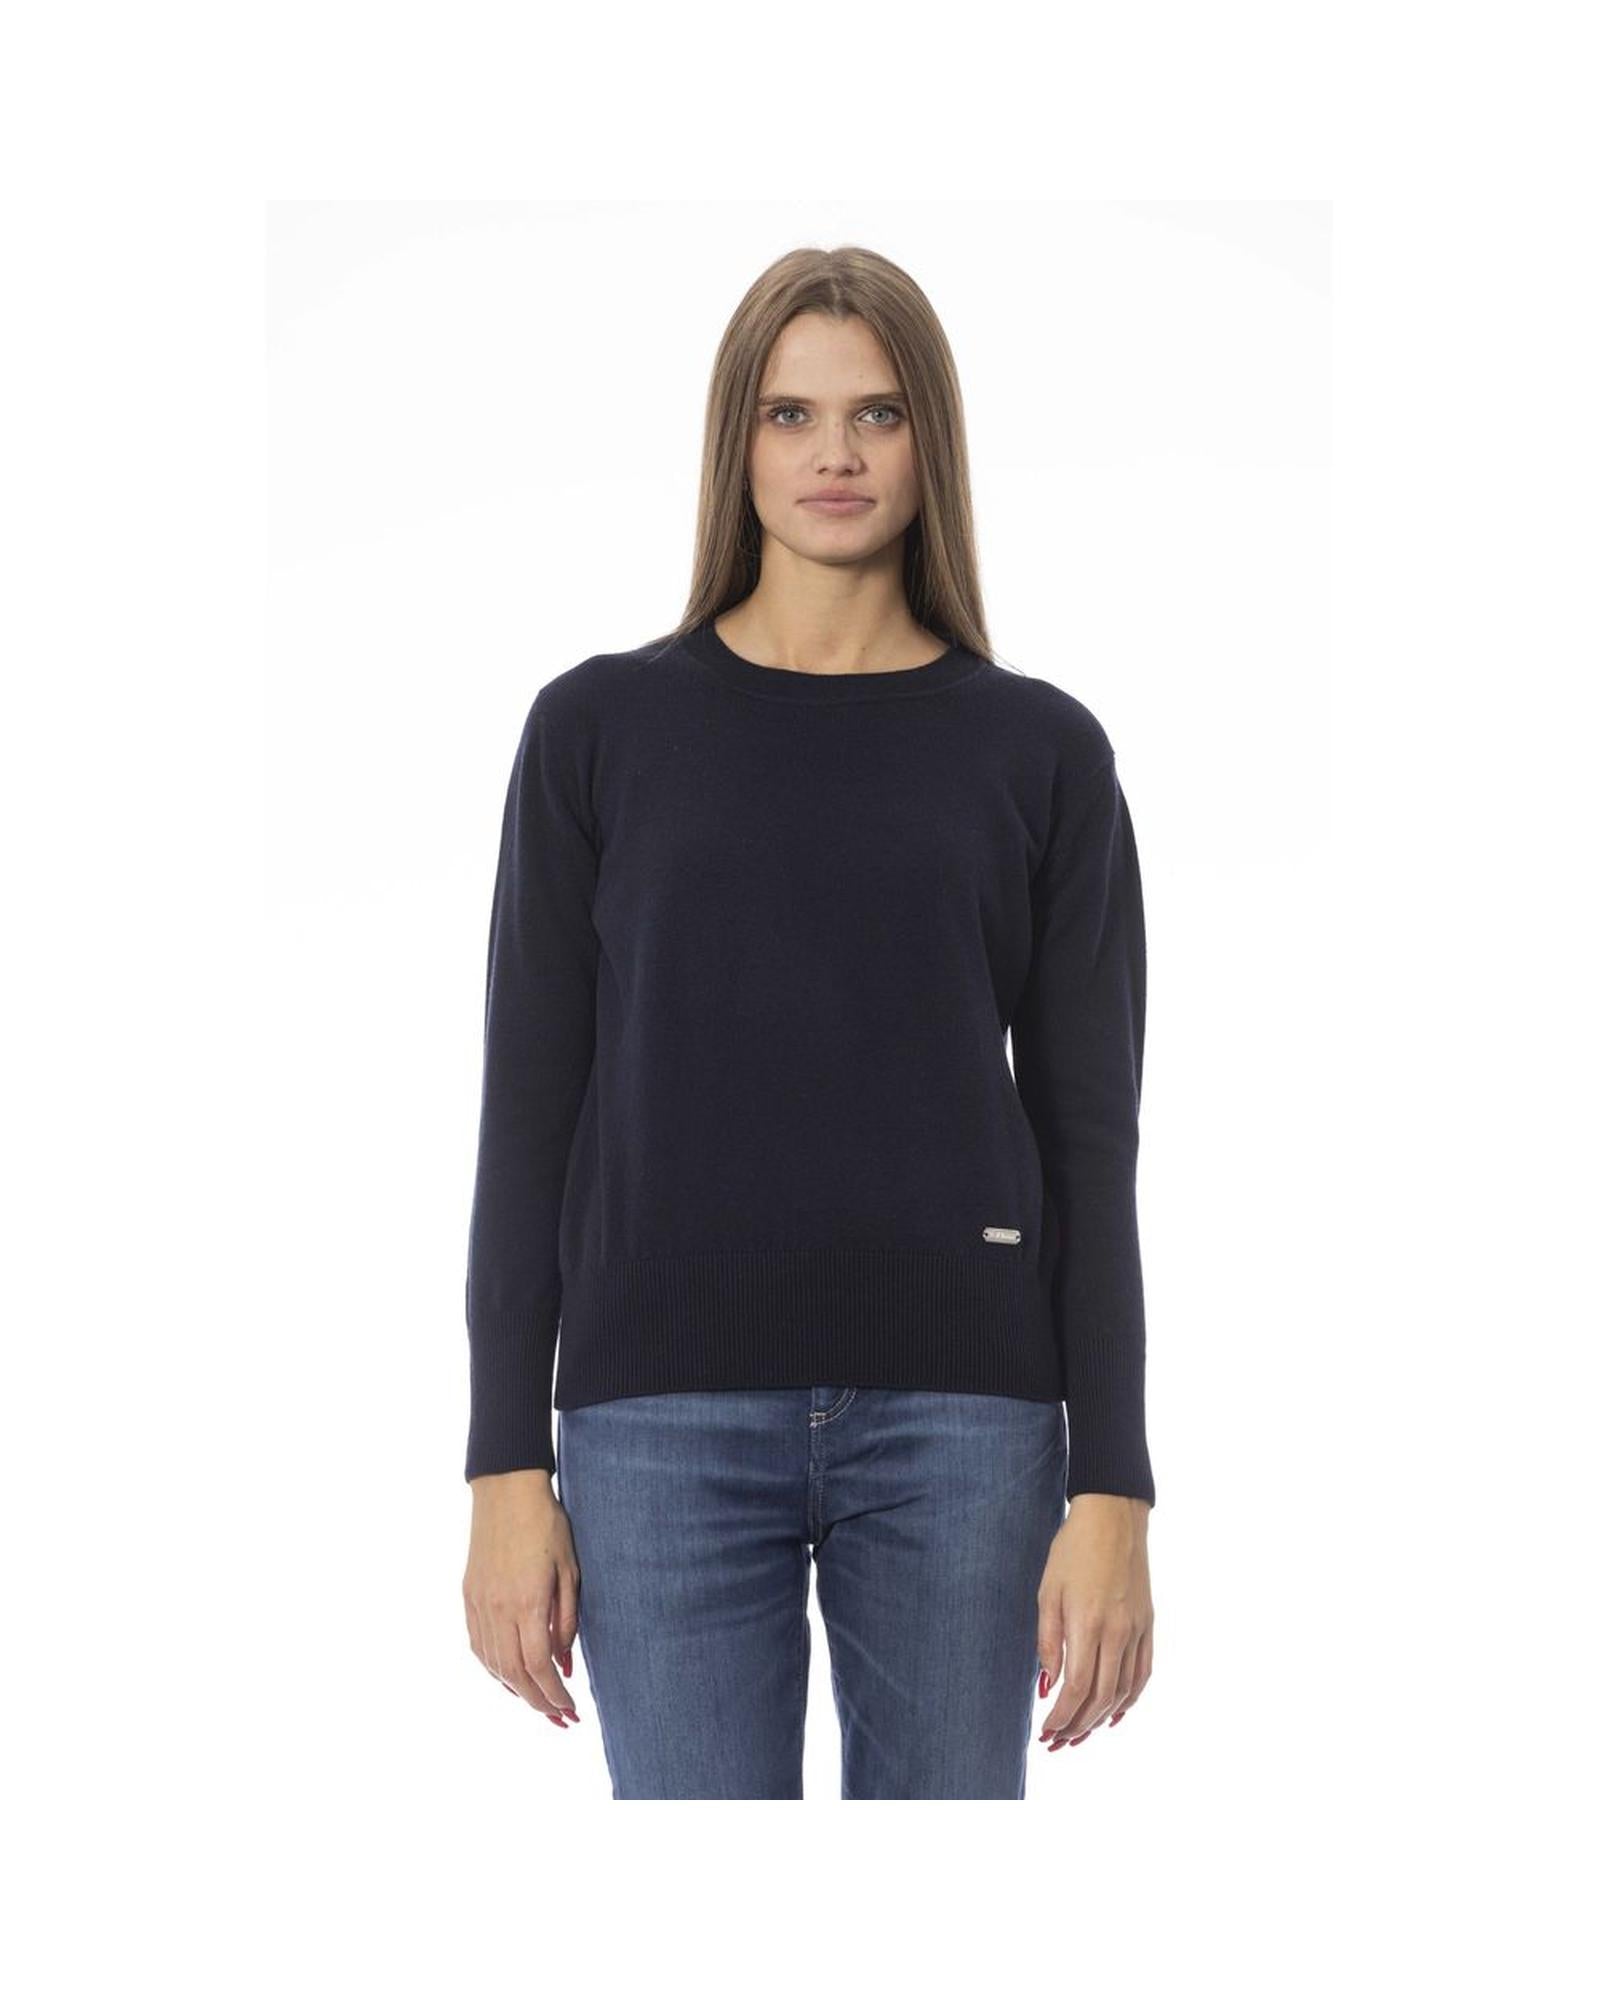 Baldinini Trend Women's Blue Wool Sweater - 46 IT